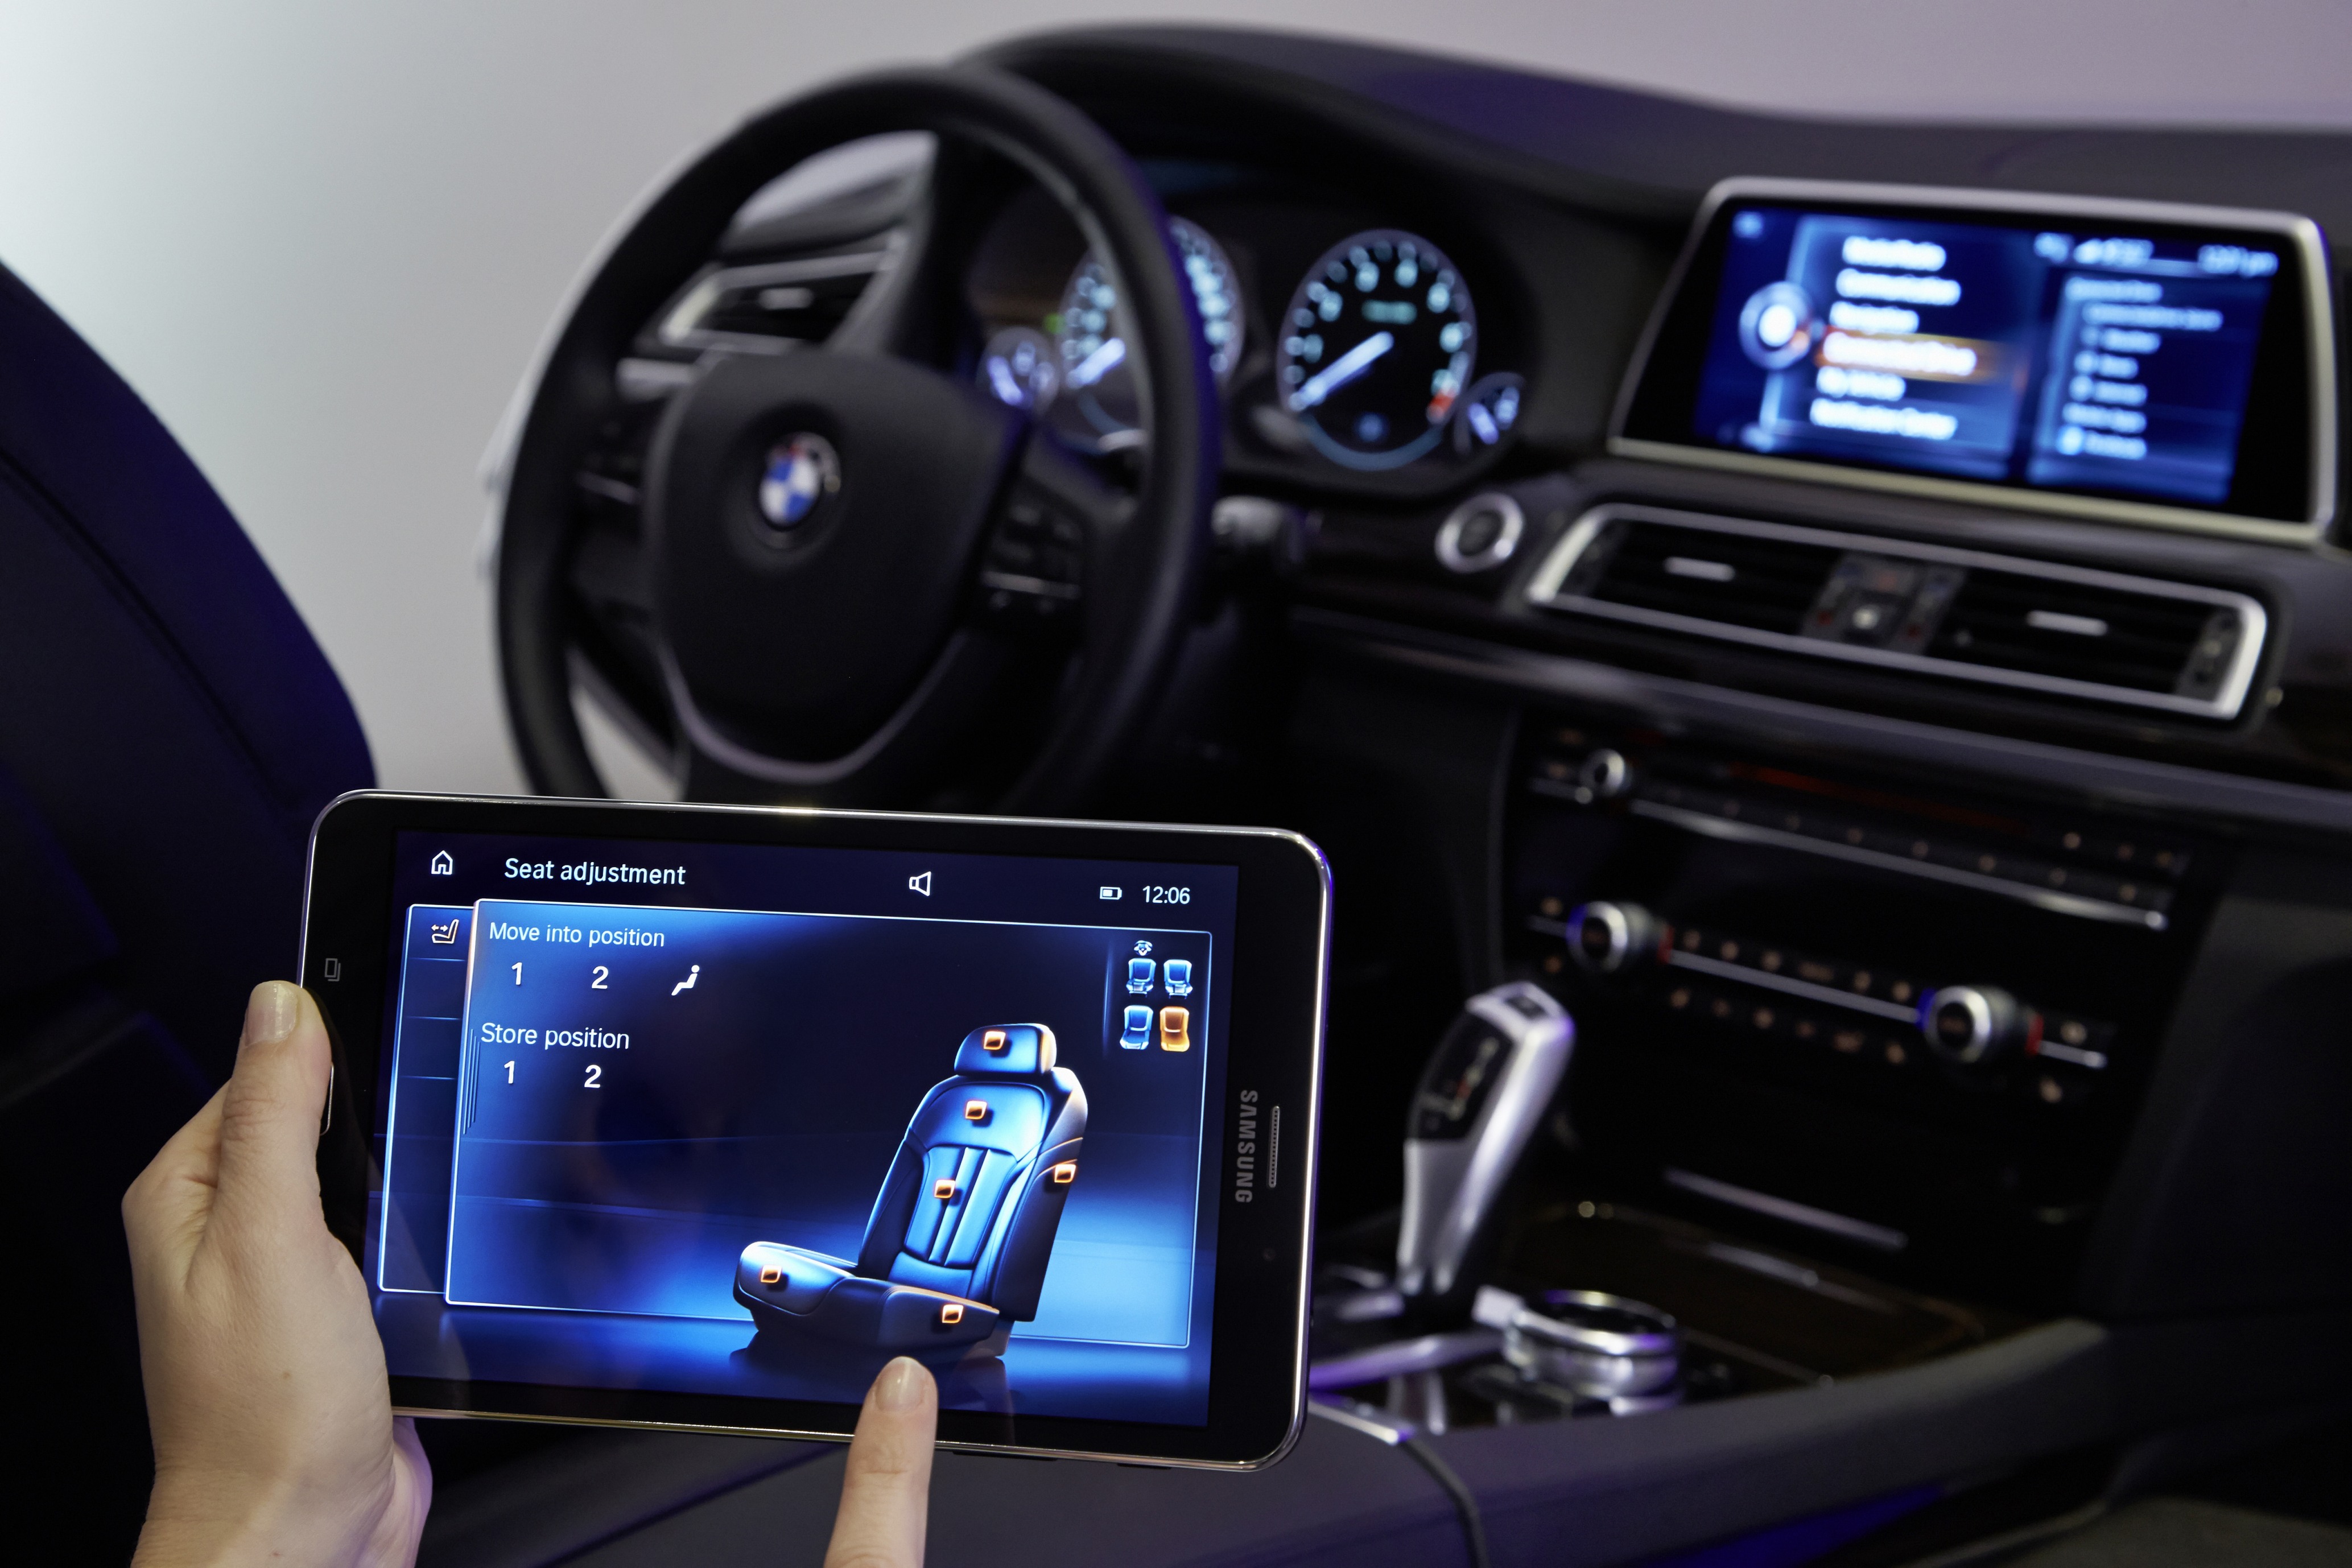 Интернет в машине через телефон. Планшет BMW Touch Command. BMW сенсорный монитор. Смартфон БМВ сенсорный. Сенсорный BMW W машина новый производства.